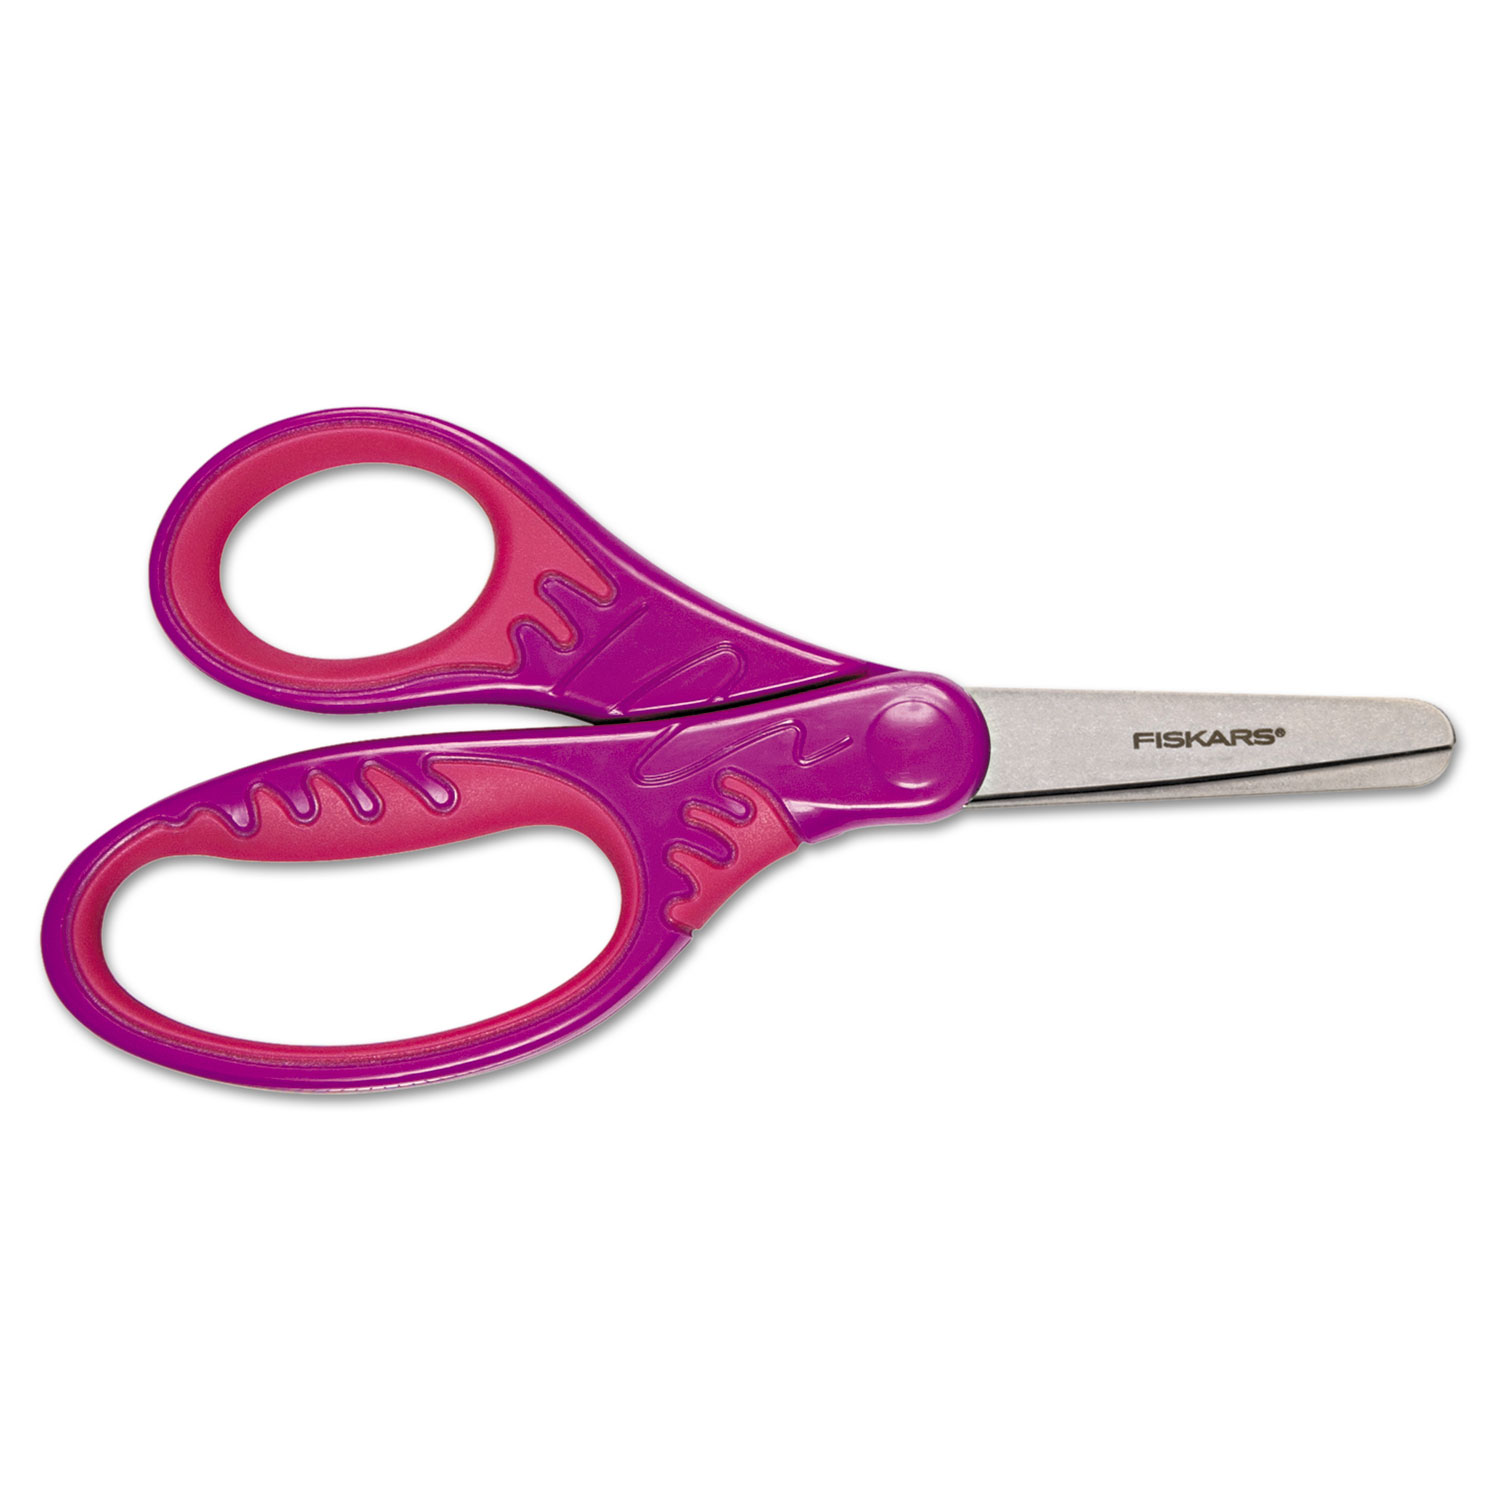  Fiskars 9422 Kids/Student Softgrip Scissors, Rounded Tip, 5 Long, 1.75 Cut Length, Randomly Assorted Straight Handles (FSK1942201001) 